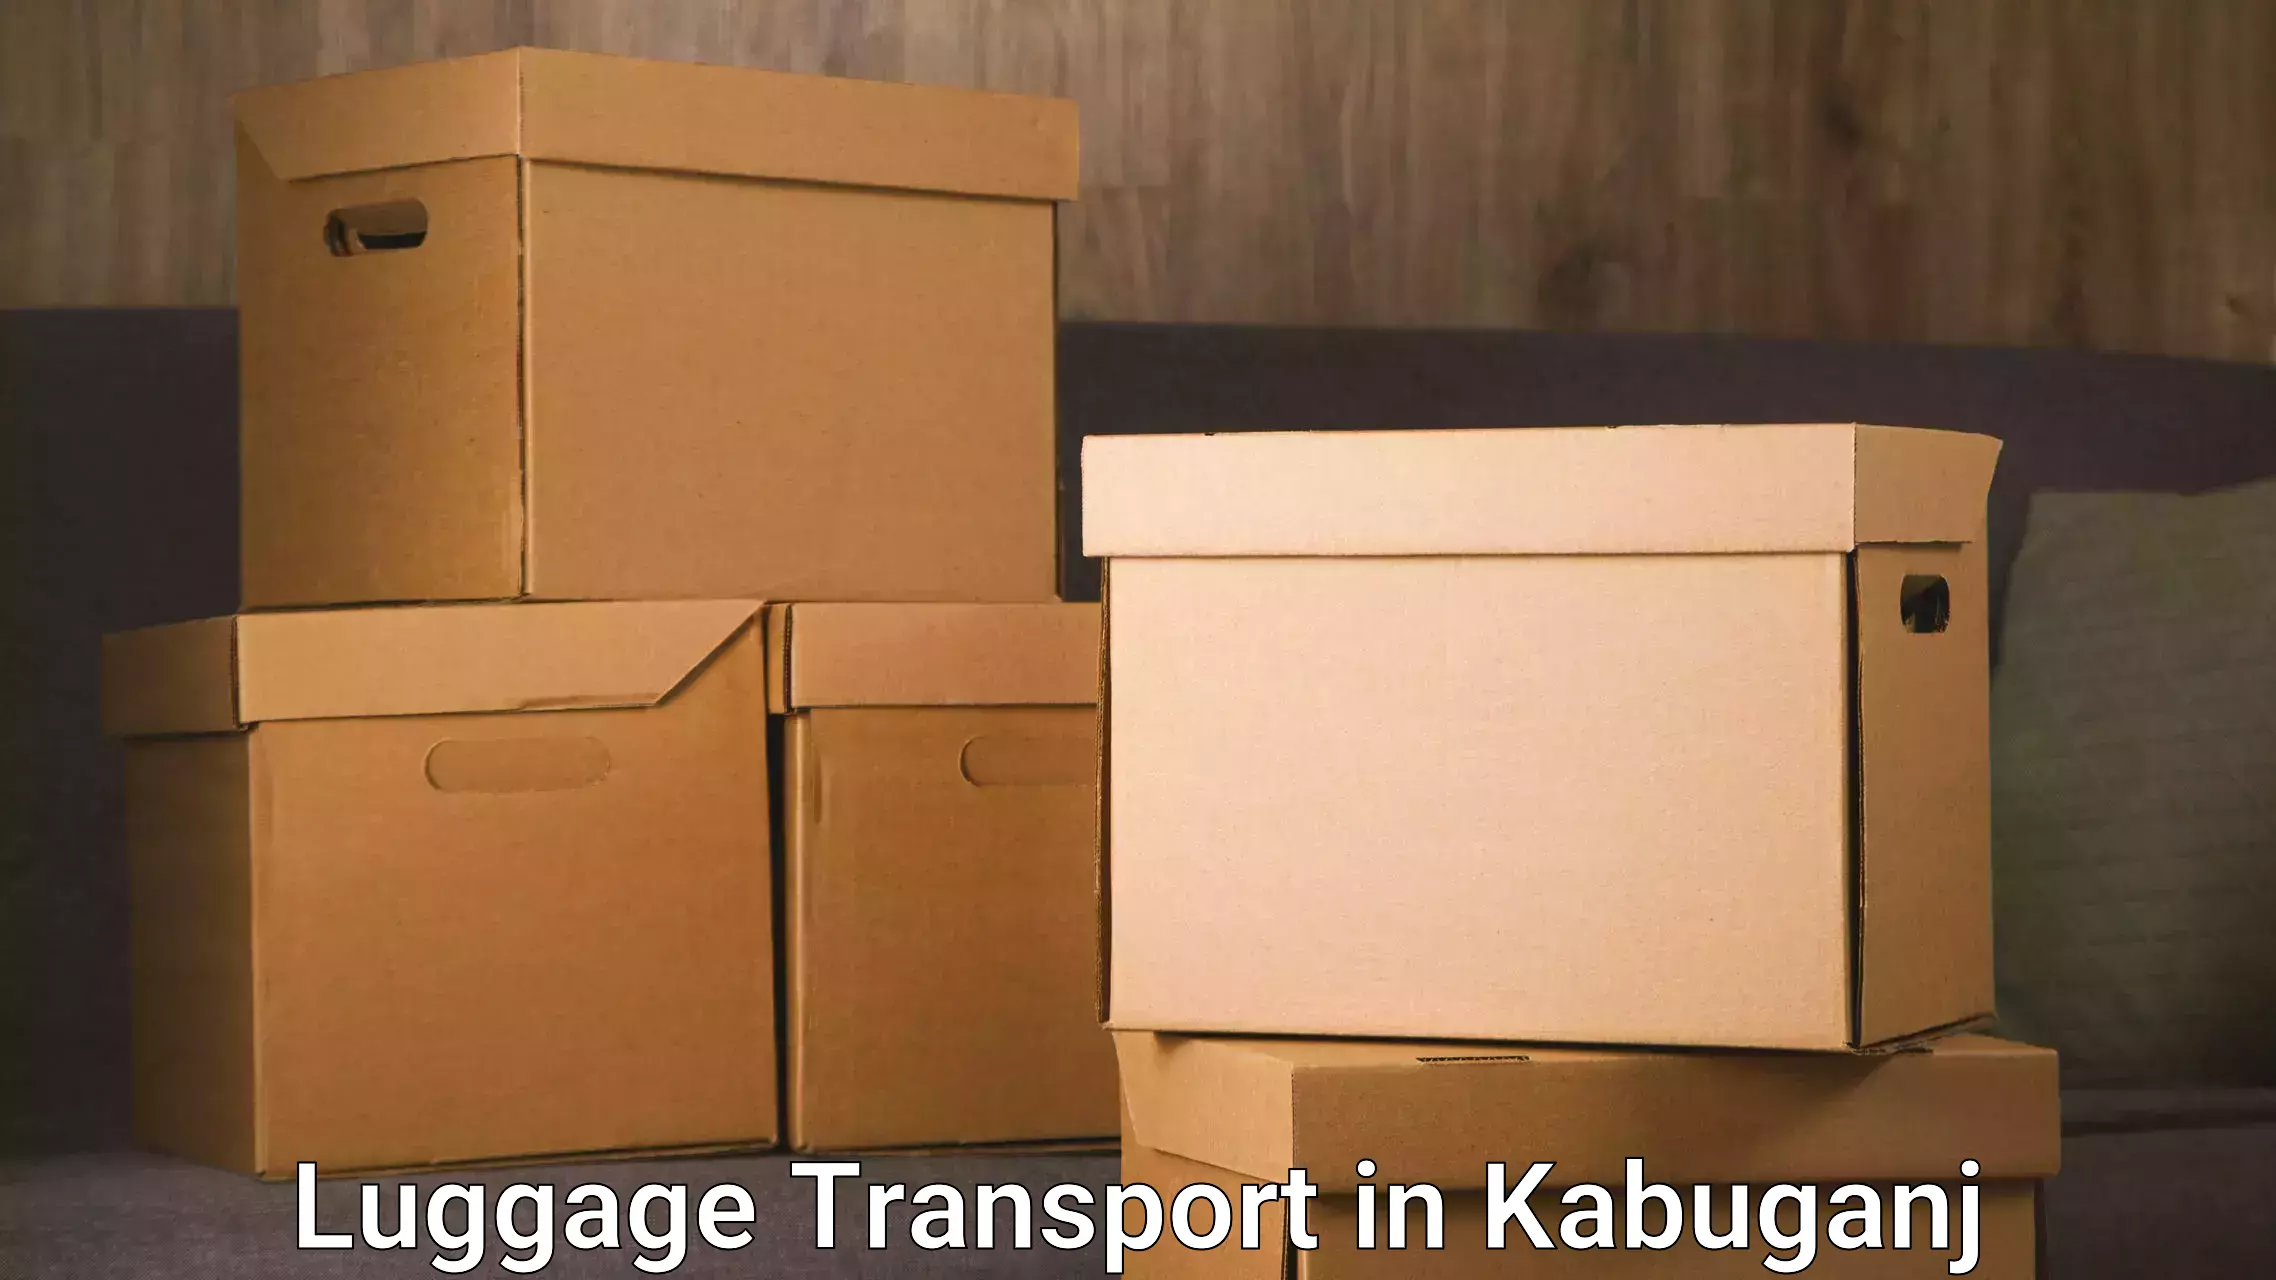 Luggage shipment logistics in Kabuganj